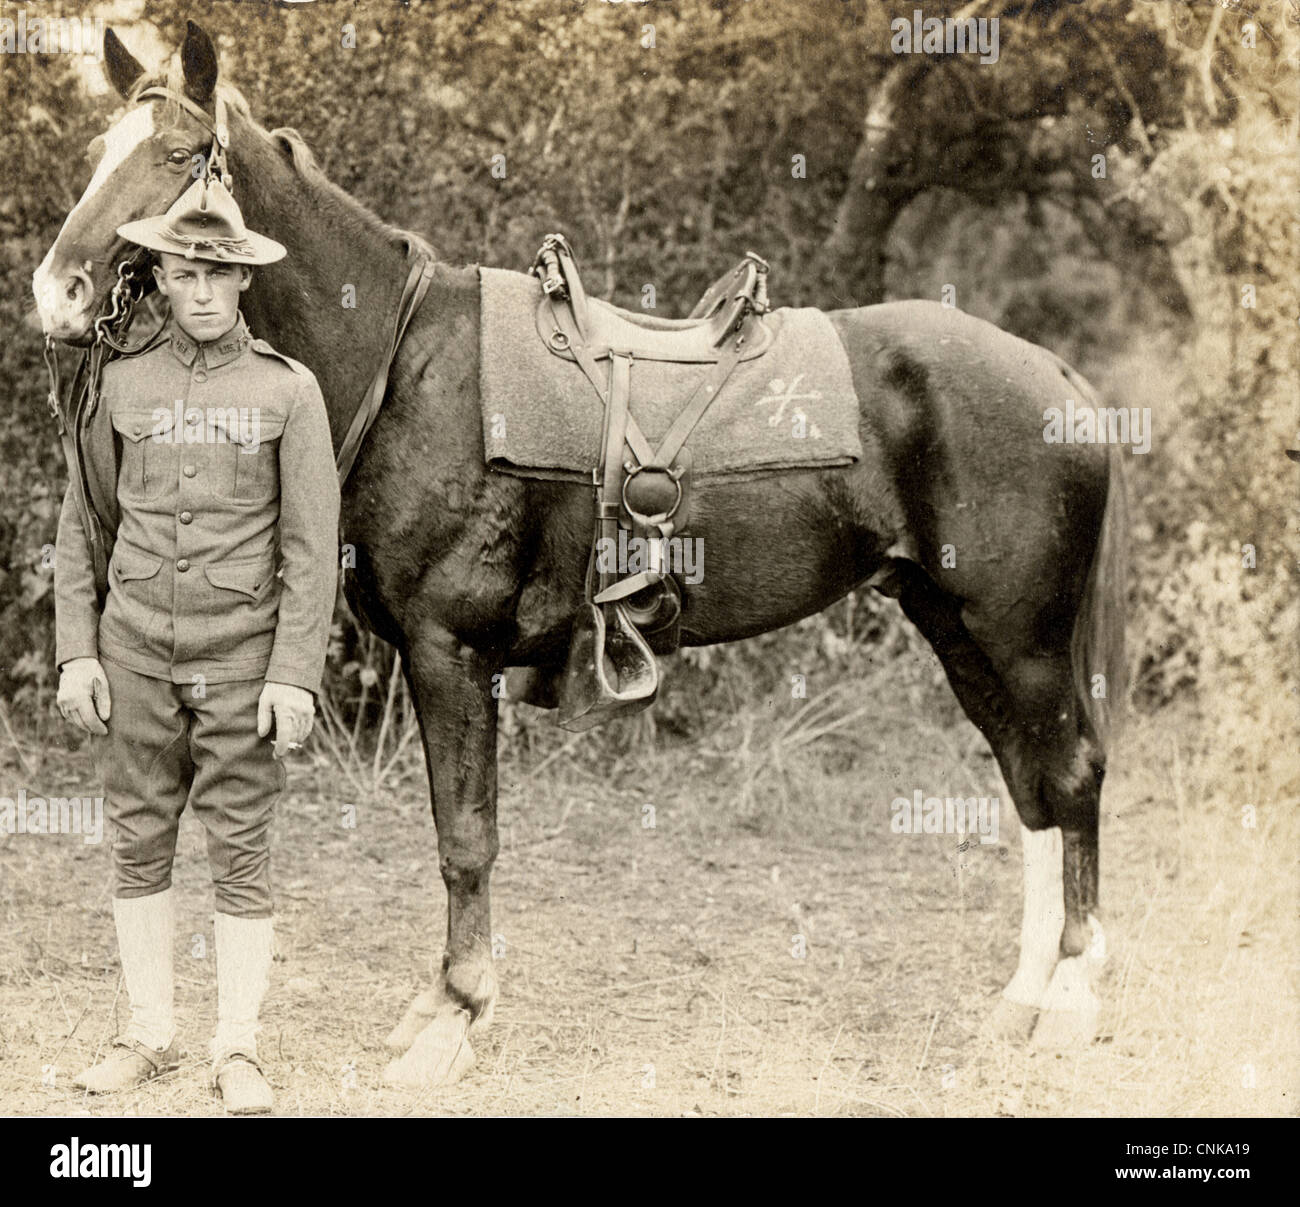 Soldat de cavalerie avec son cheval Banque D'Images